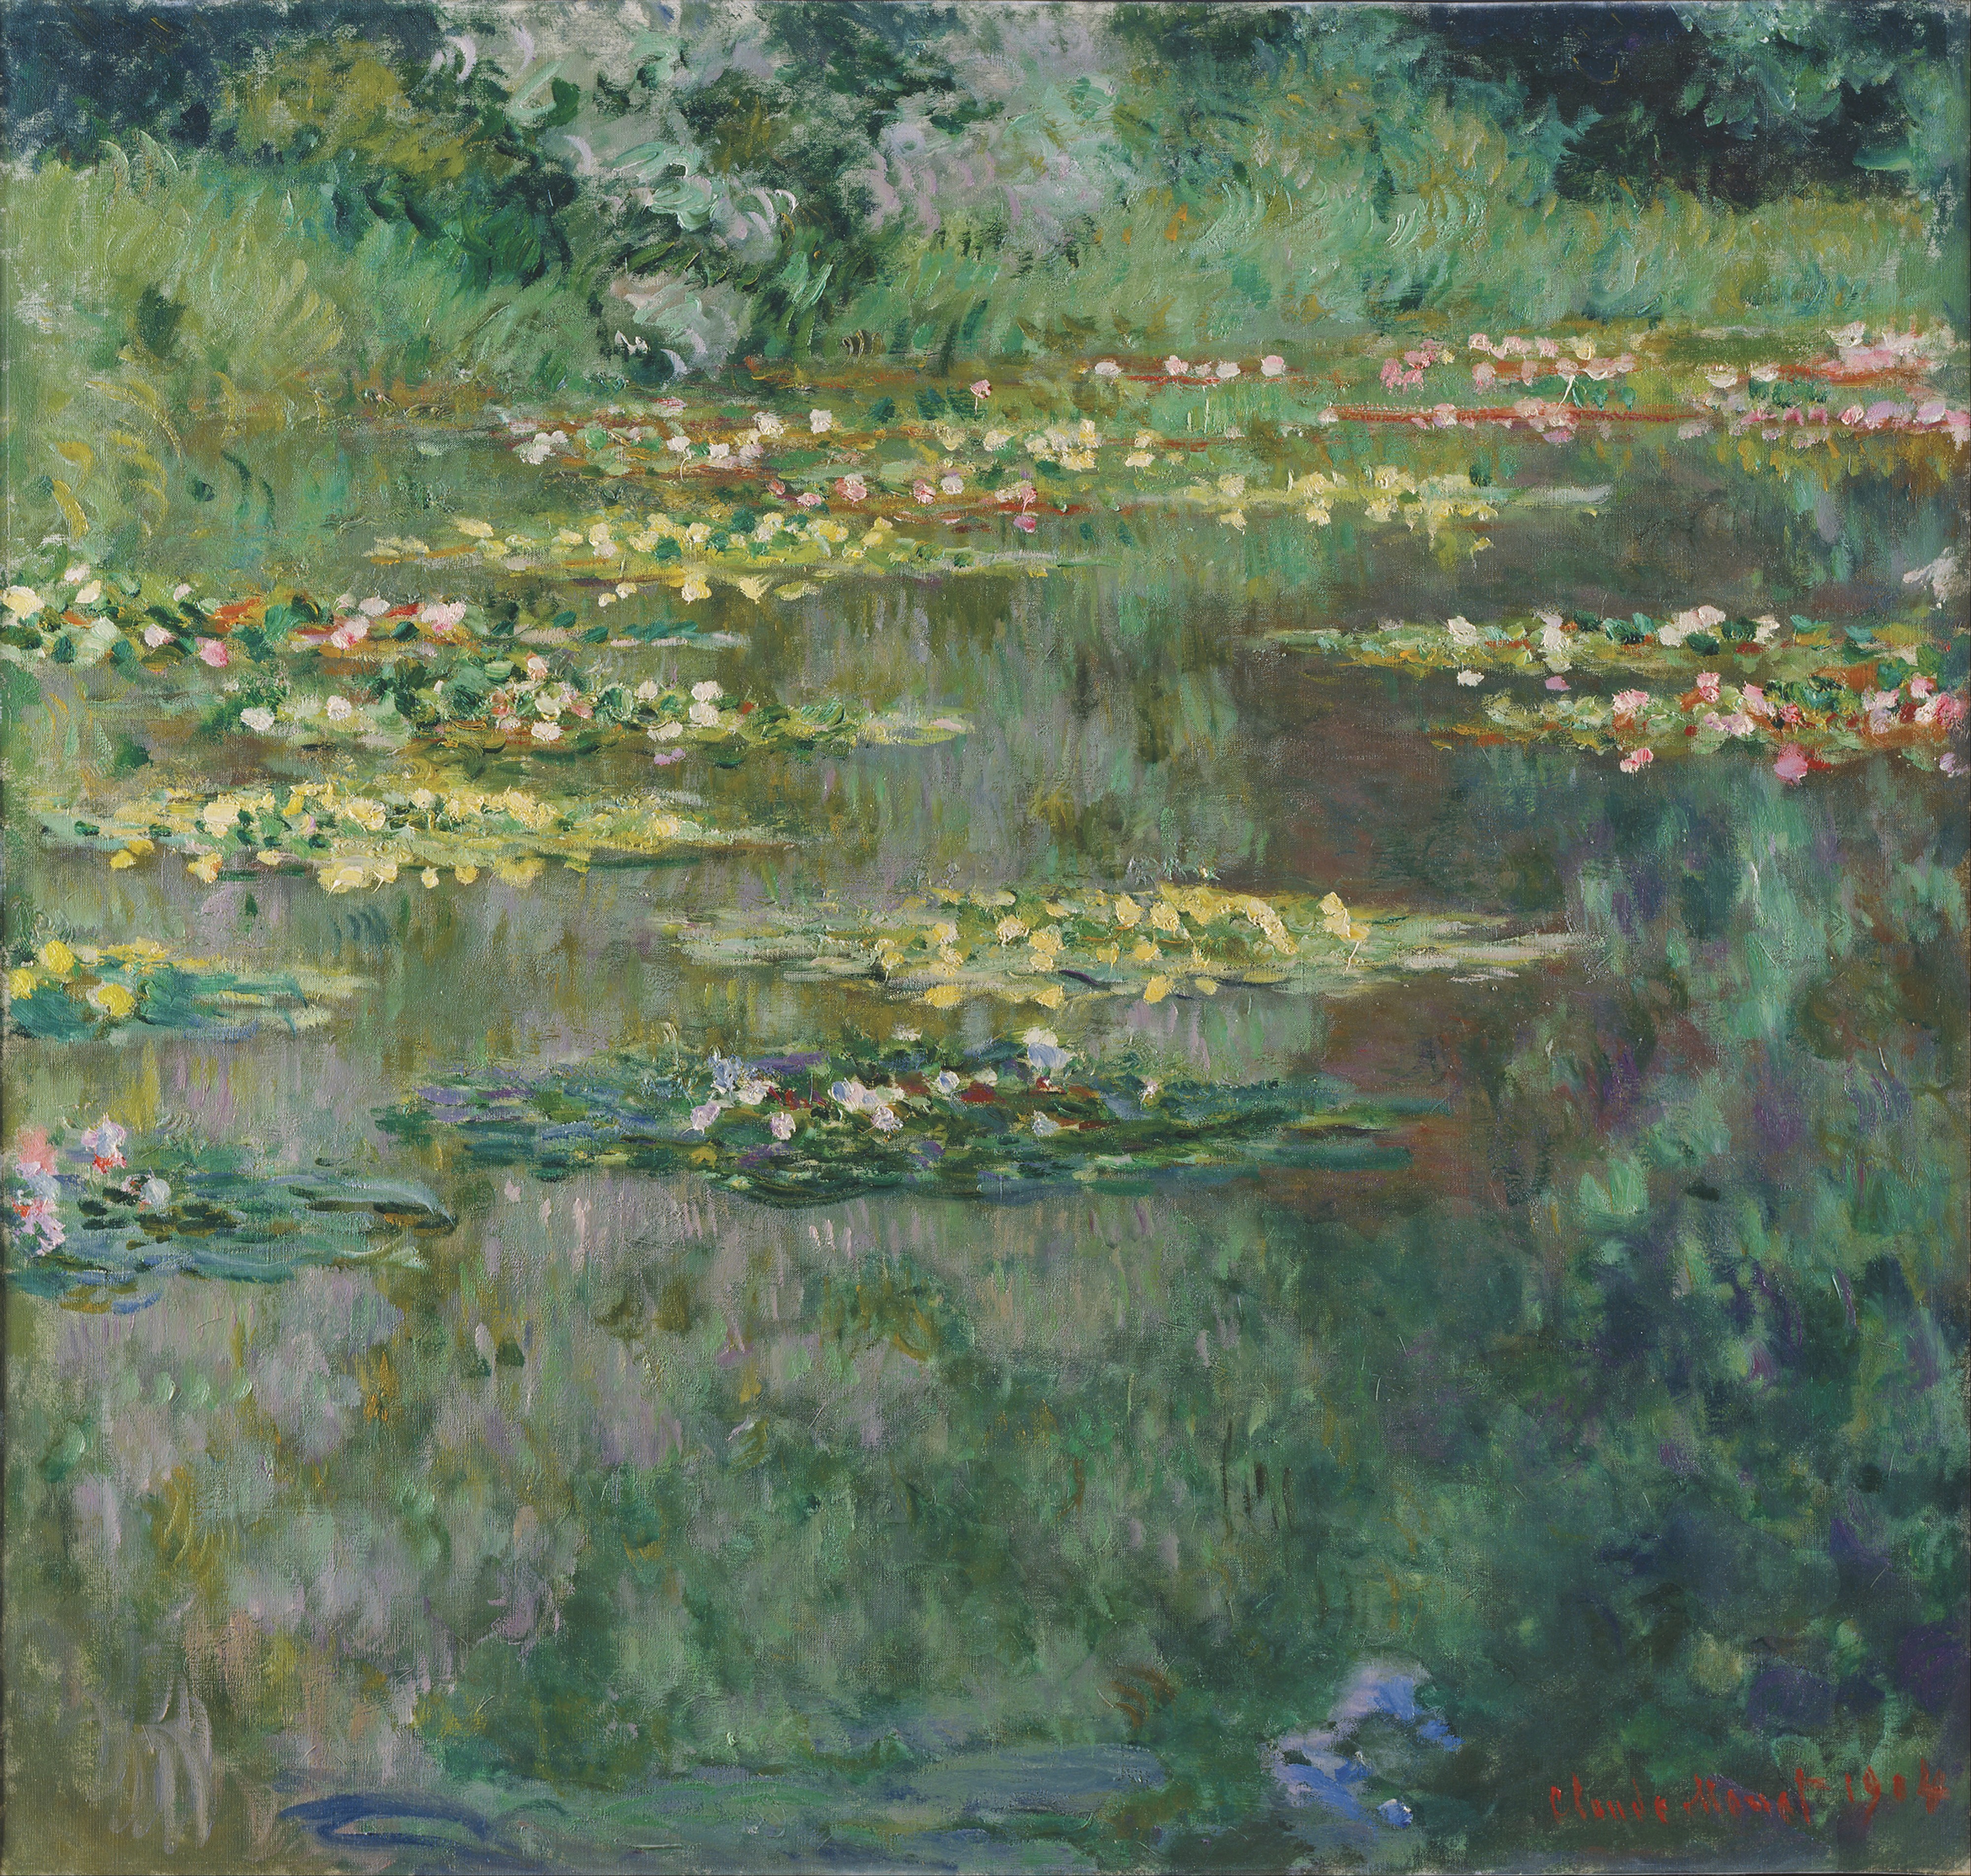 Claude Monet - Le Bassin des Nympheas - Google Art Project